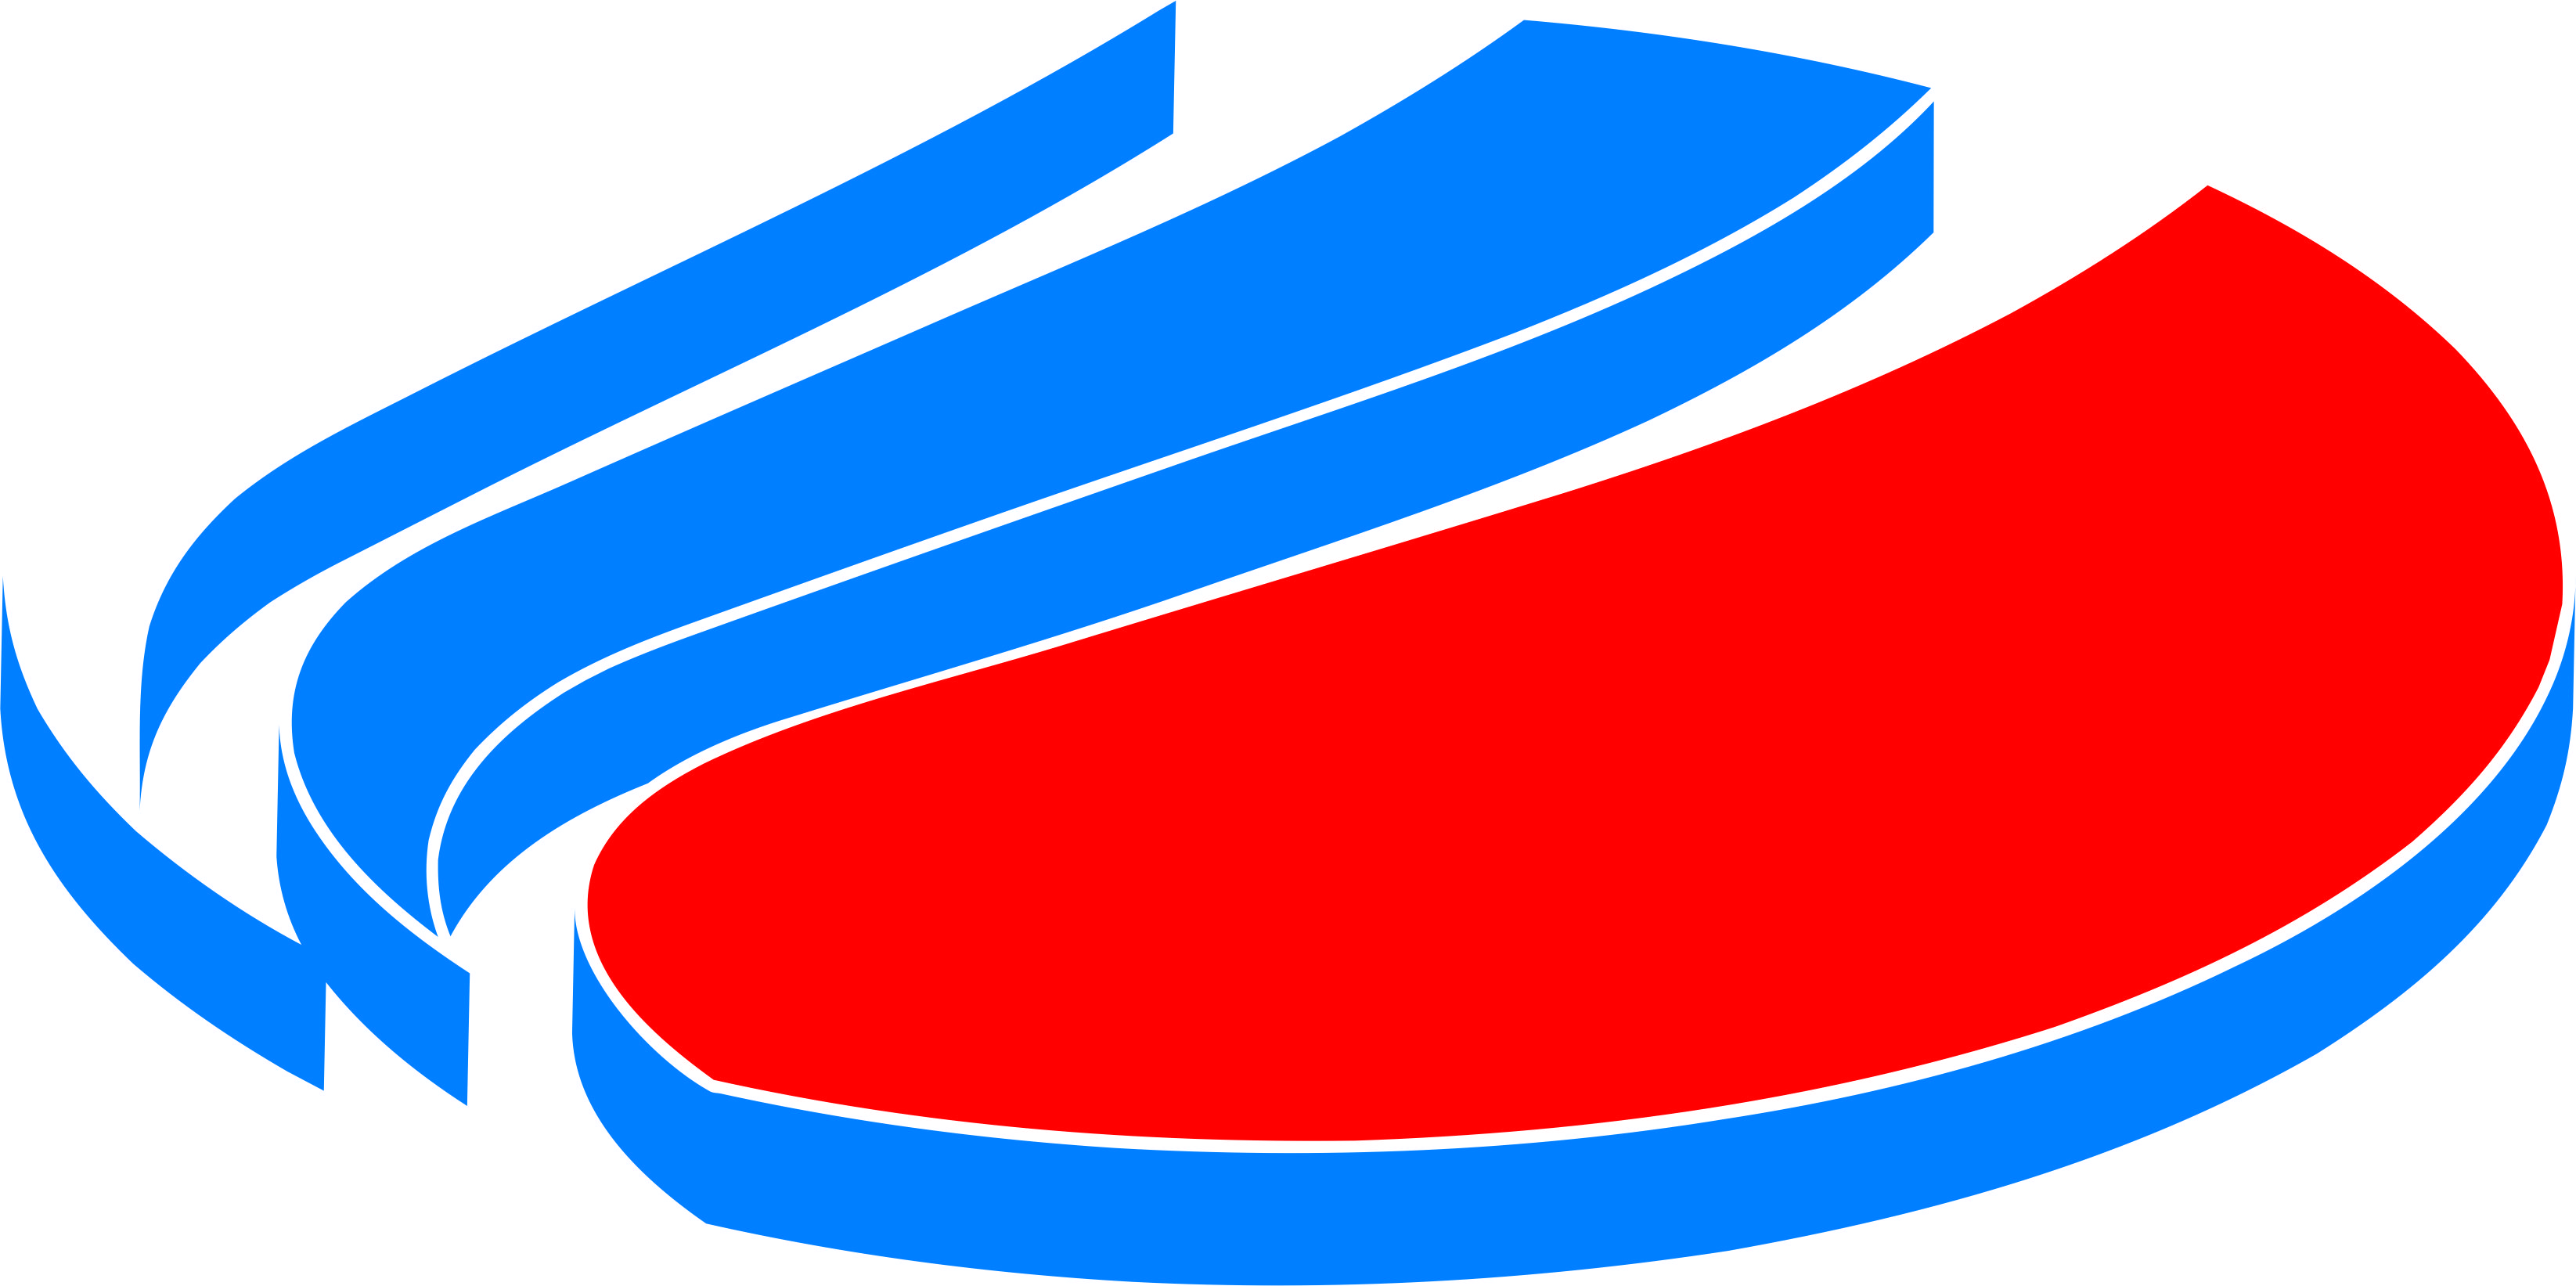 Логотип Нижегородского кредитного союза